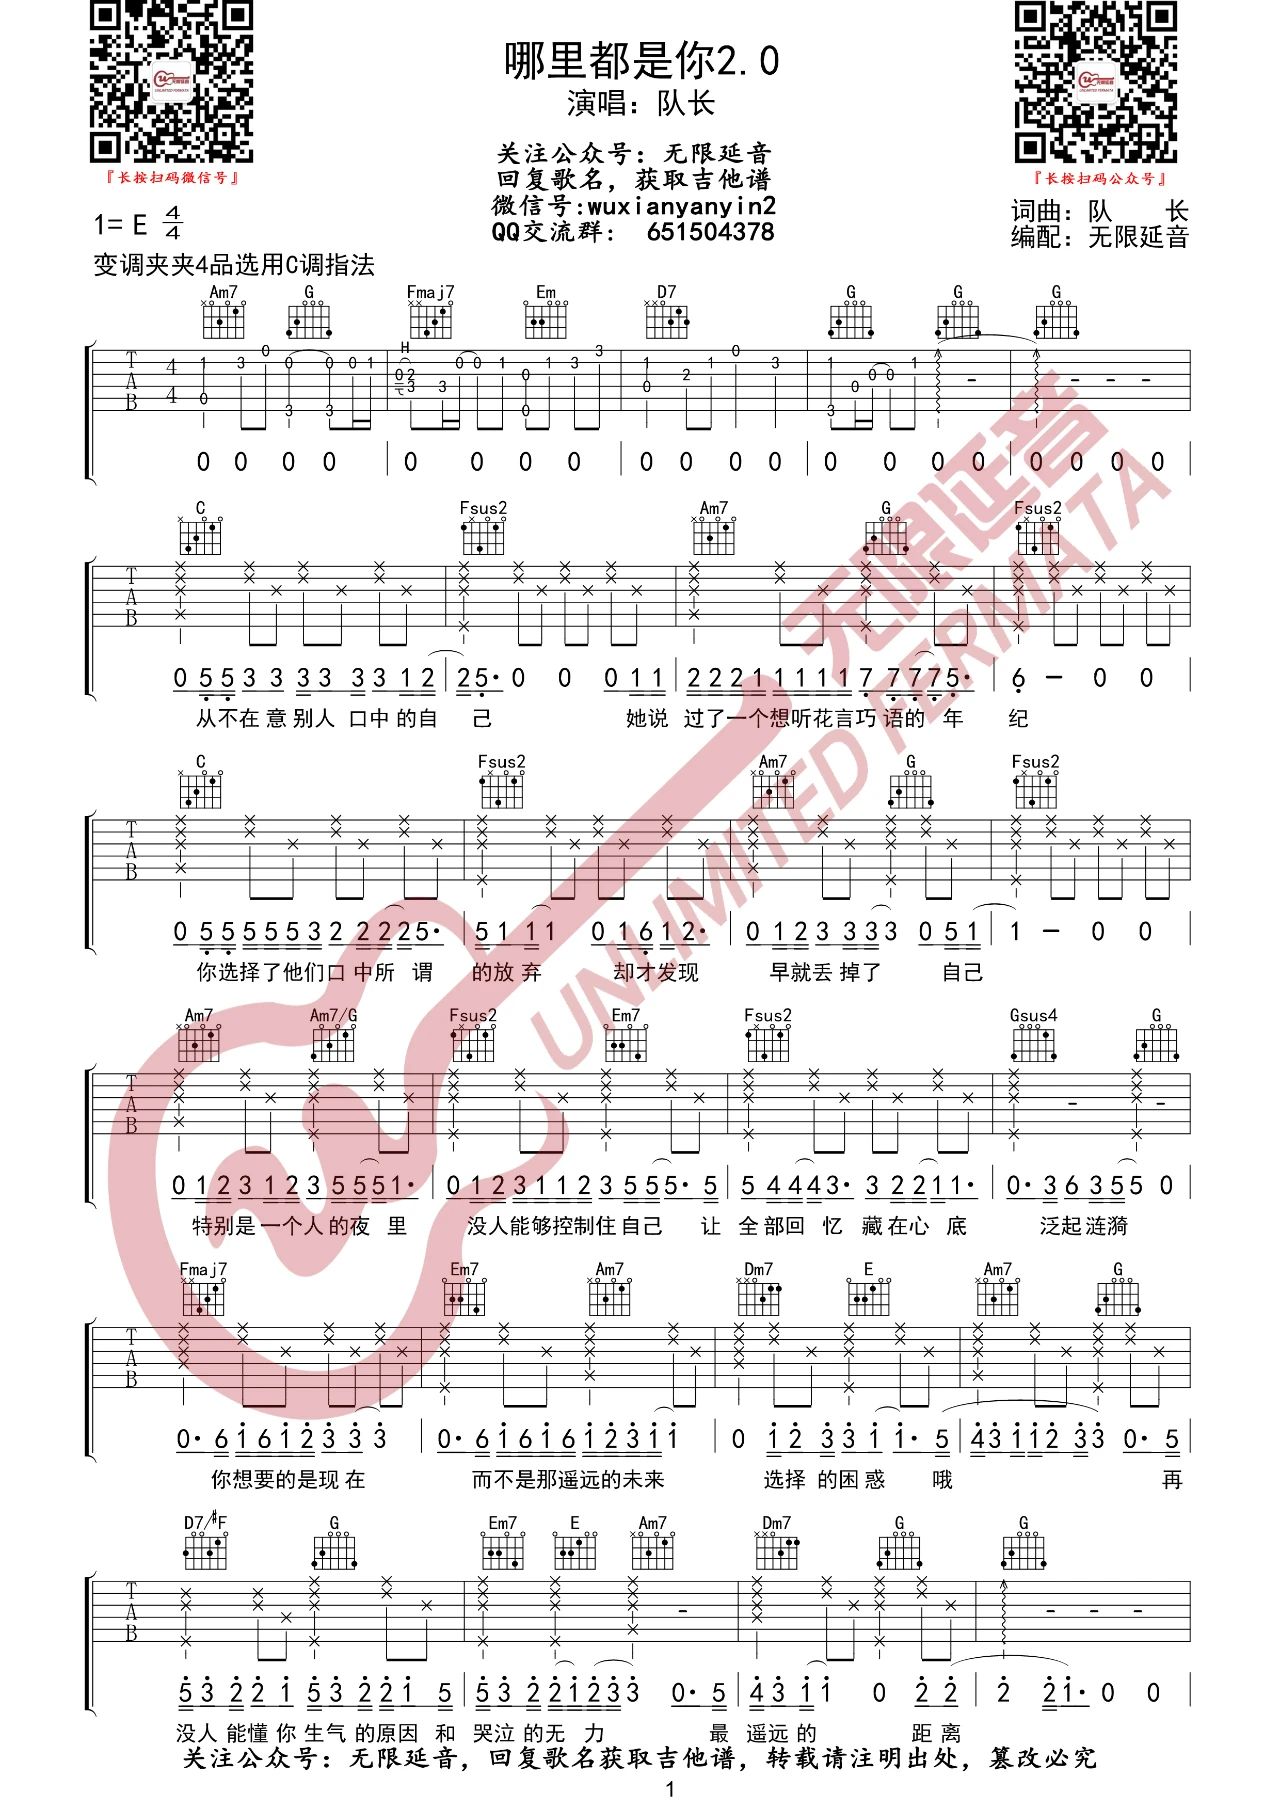 精选GTP电吉他独奏谱-乐队总谱合集 - 第 5 页 - GTP吉他谱